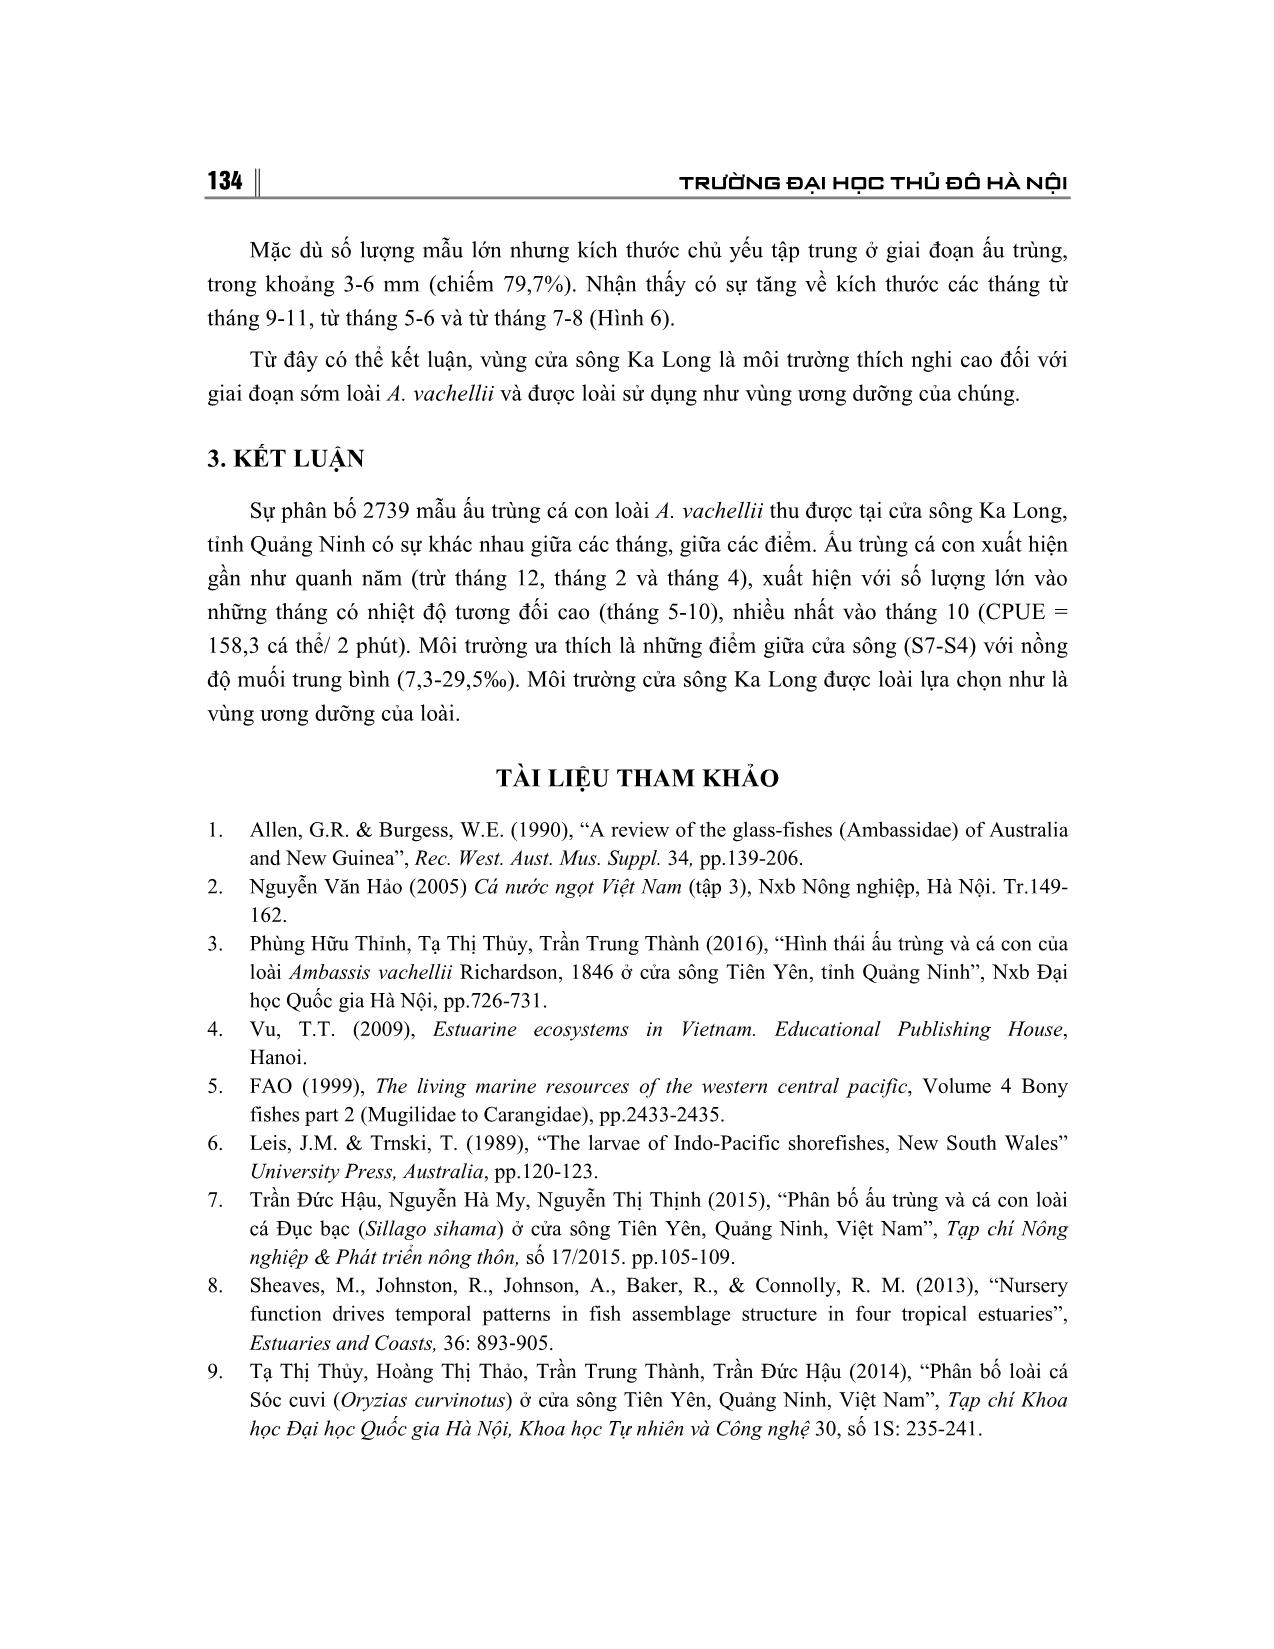 Vai trò của sông Ka long, tỉnh Quảng Ninh đối với ấu trung và cá con trang 8